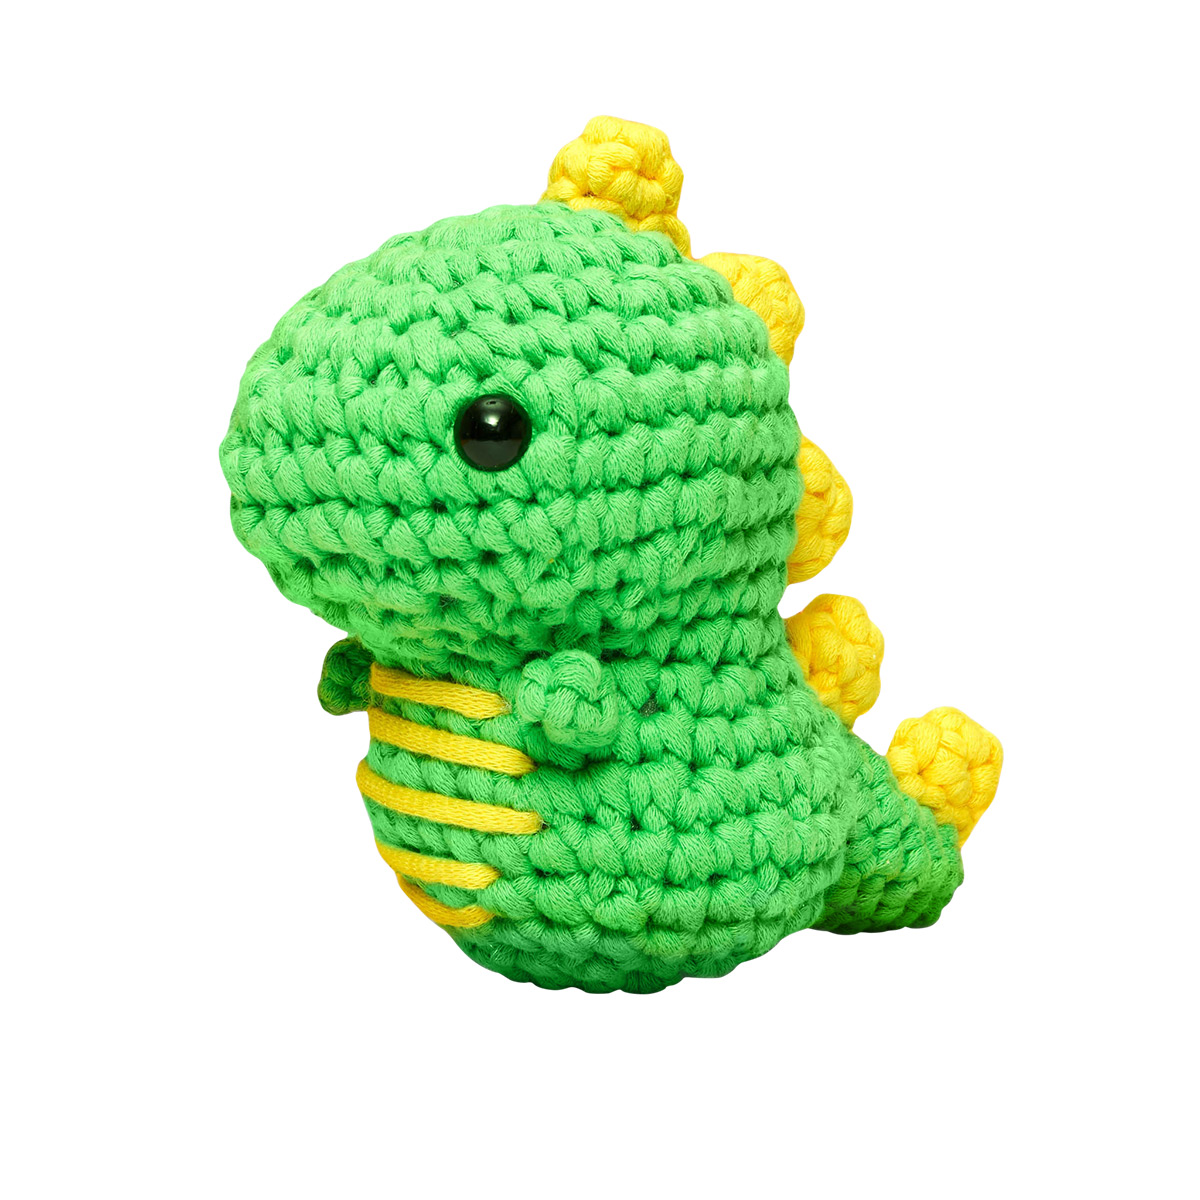 The Woobles Dinosaur Crochet Kit for Beginners